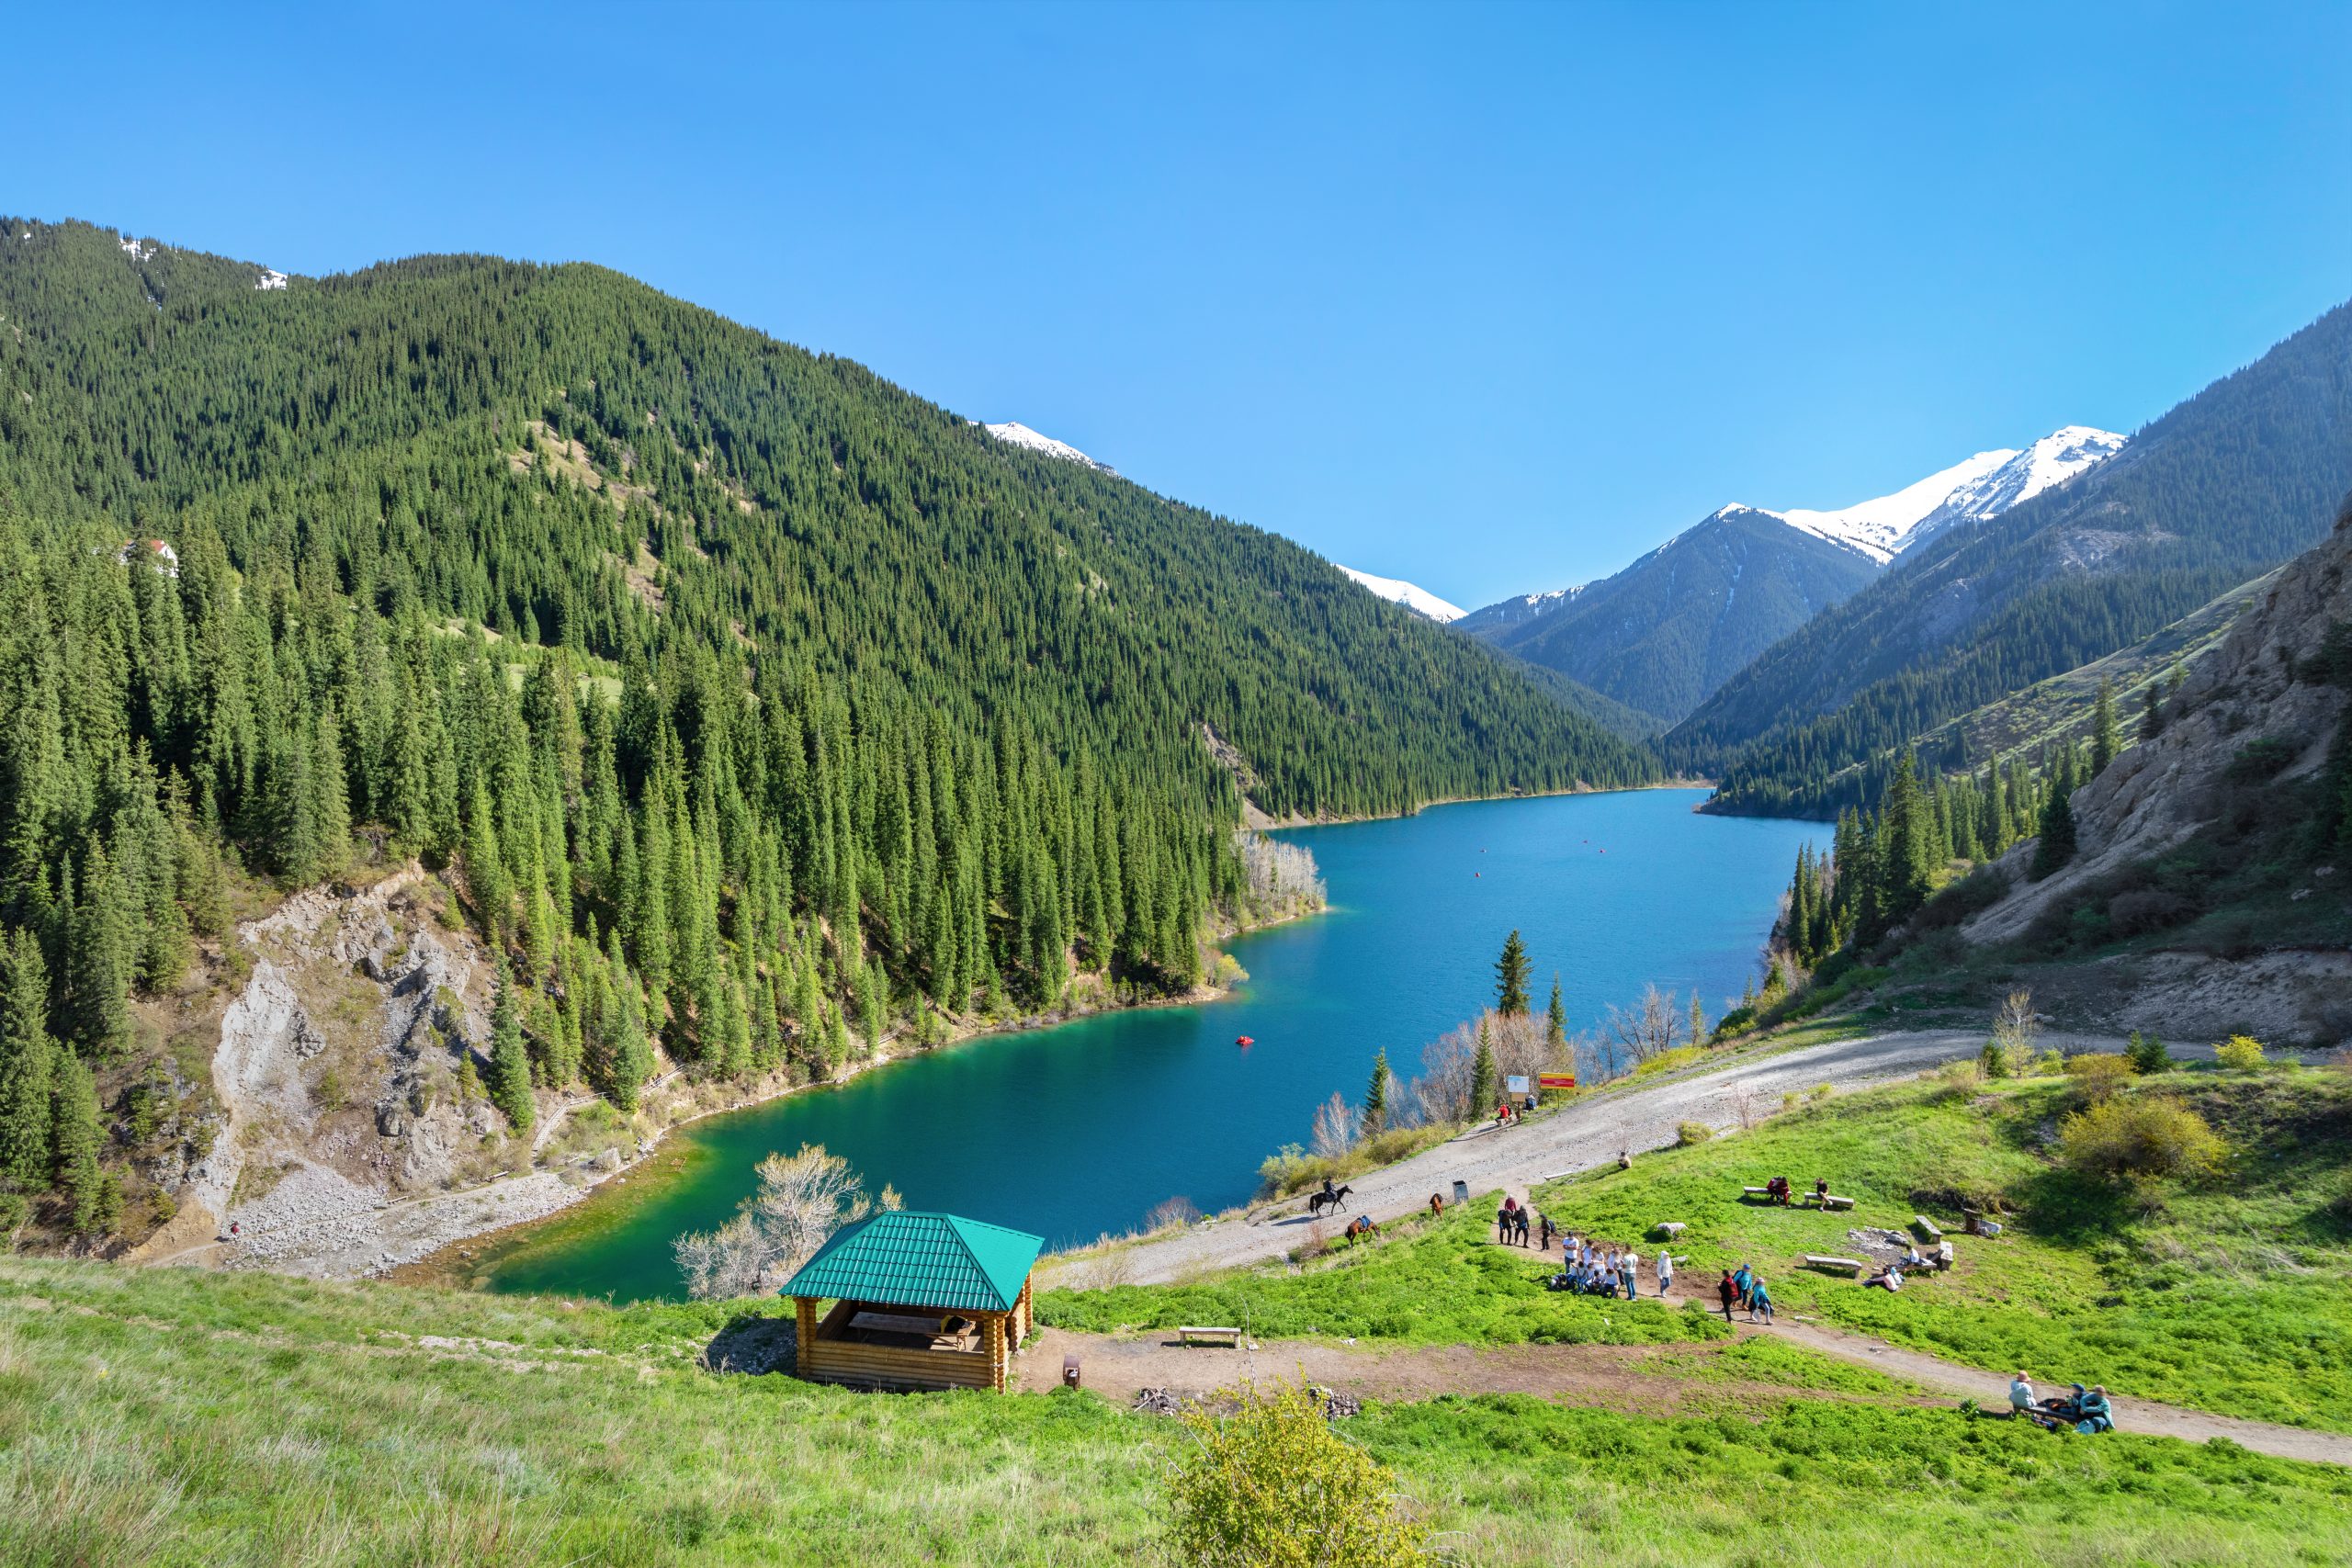 View of Lower Kolsay Lake from observation point, Almaty Region, Kazakhstan